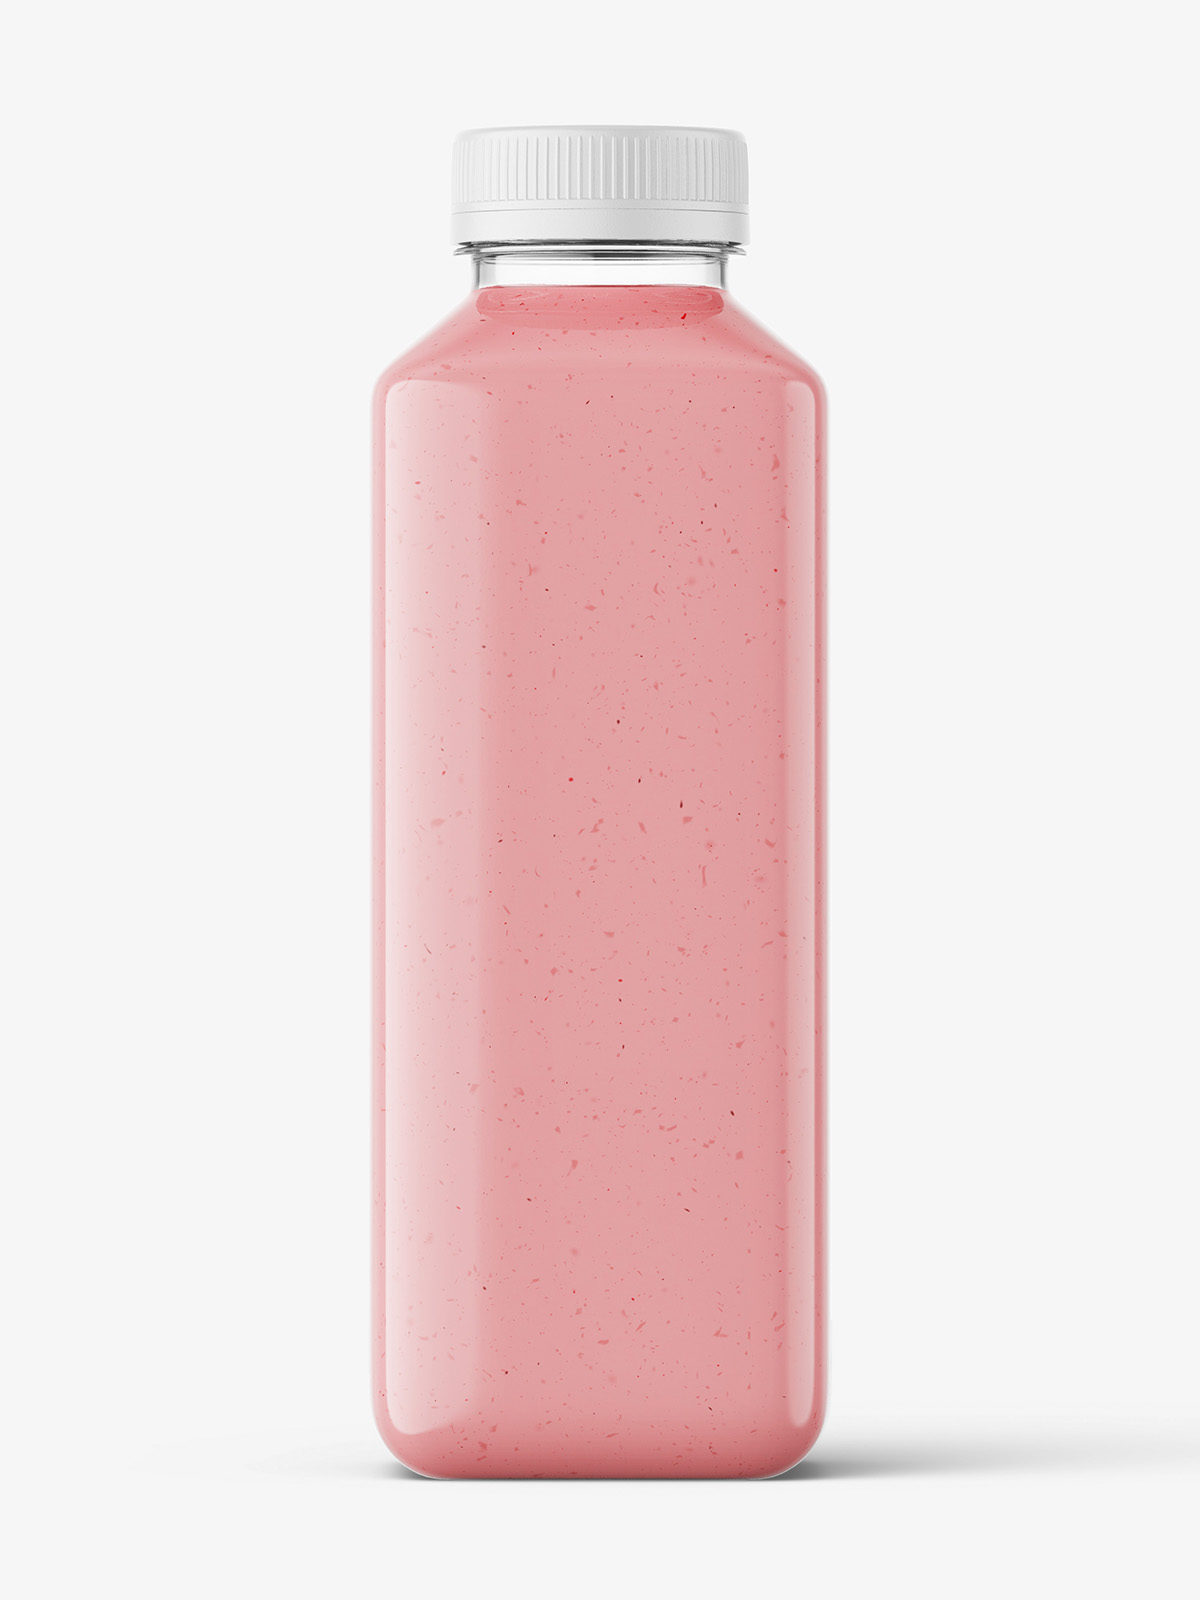 Red smoothie bottle mockup - Smarty Mockups